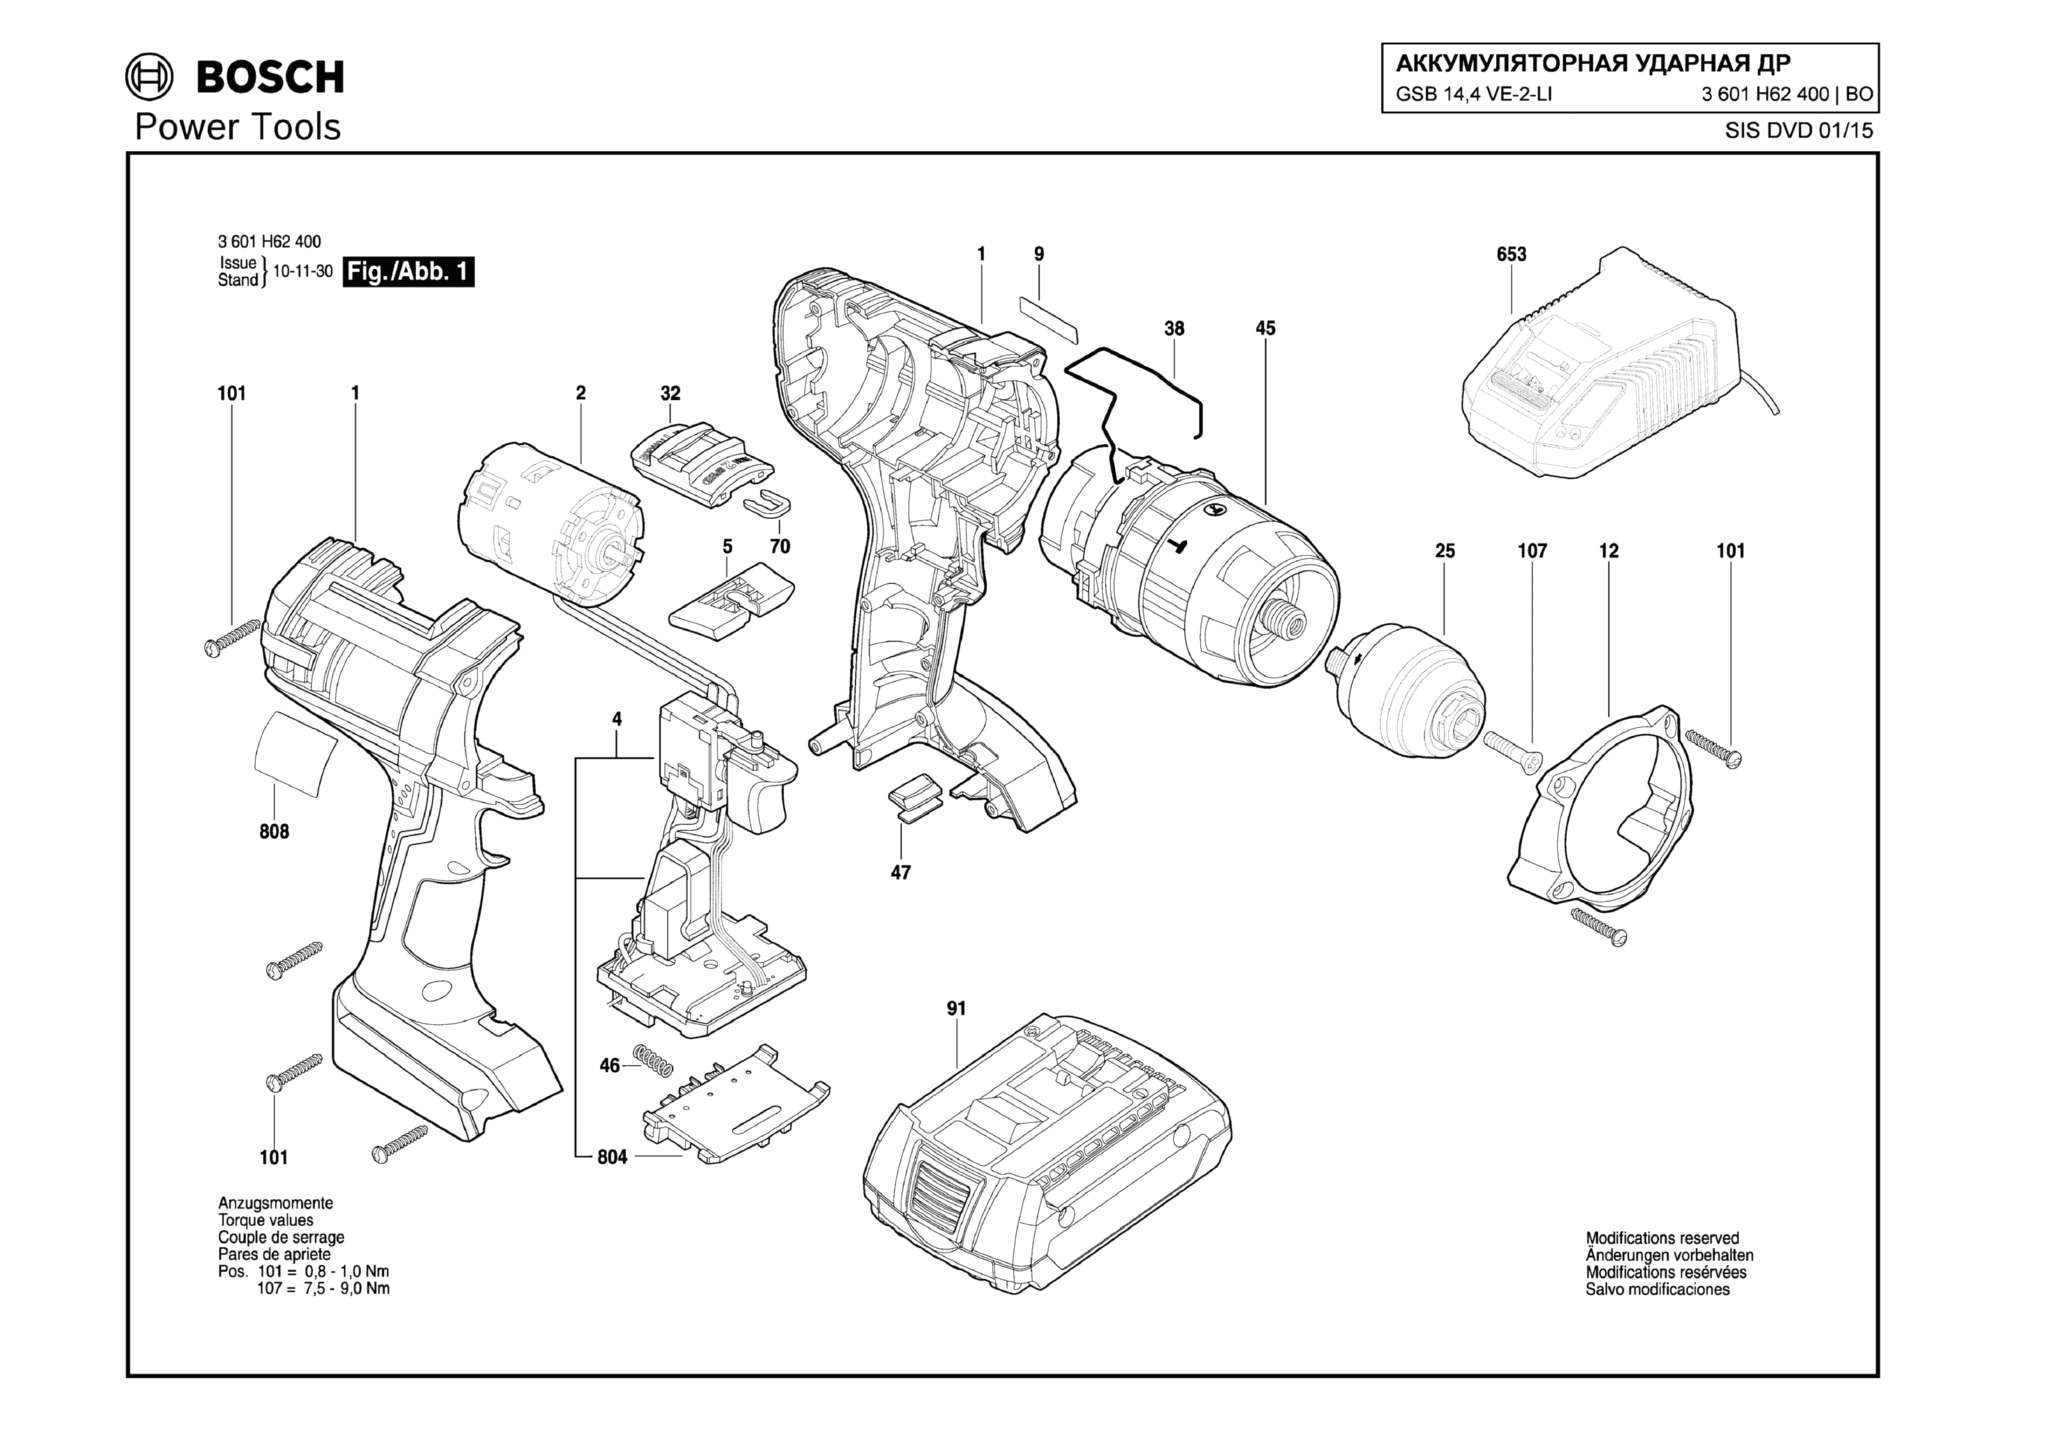 Запчасти, схема и деталировка Bosch GSB 14,4 VE-2-LI (ТИП 3601H62400)